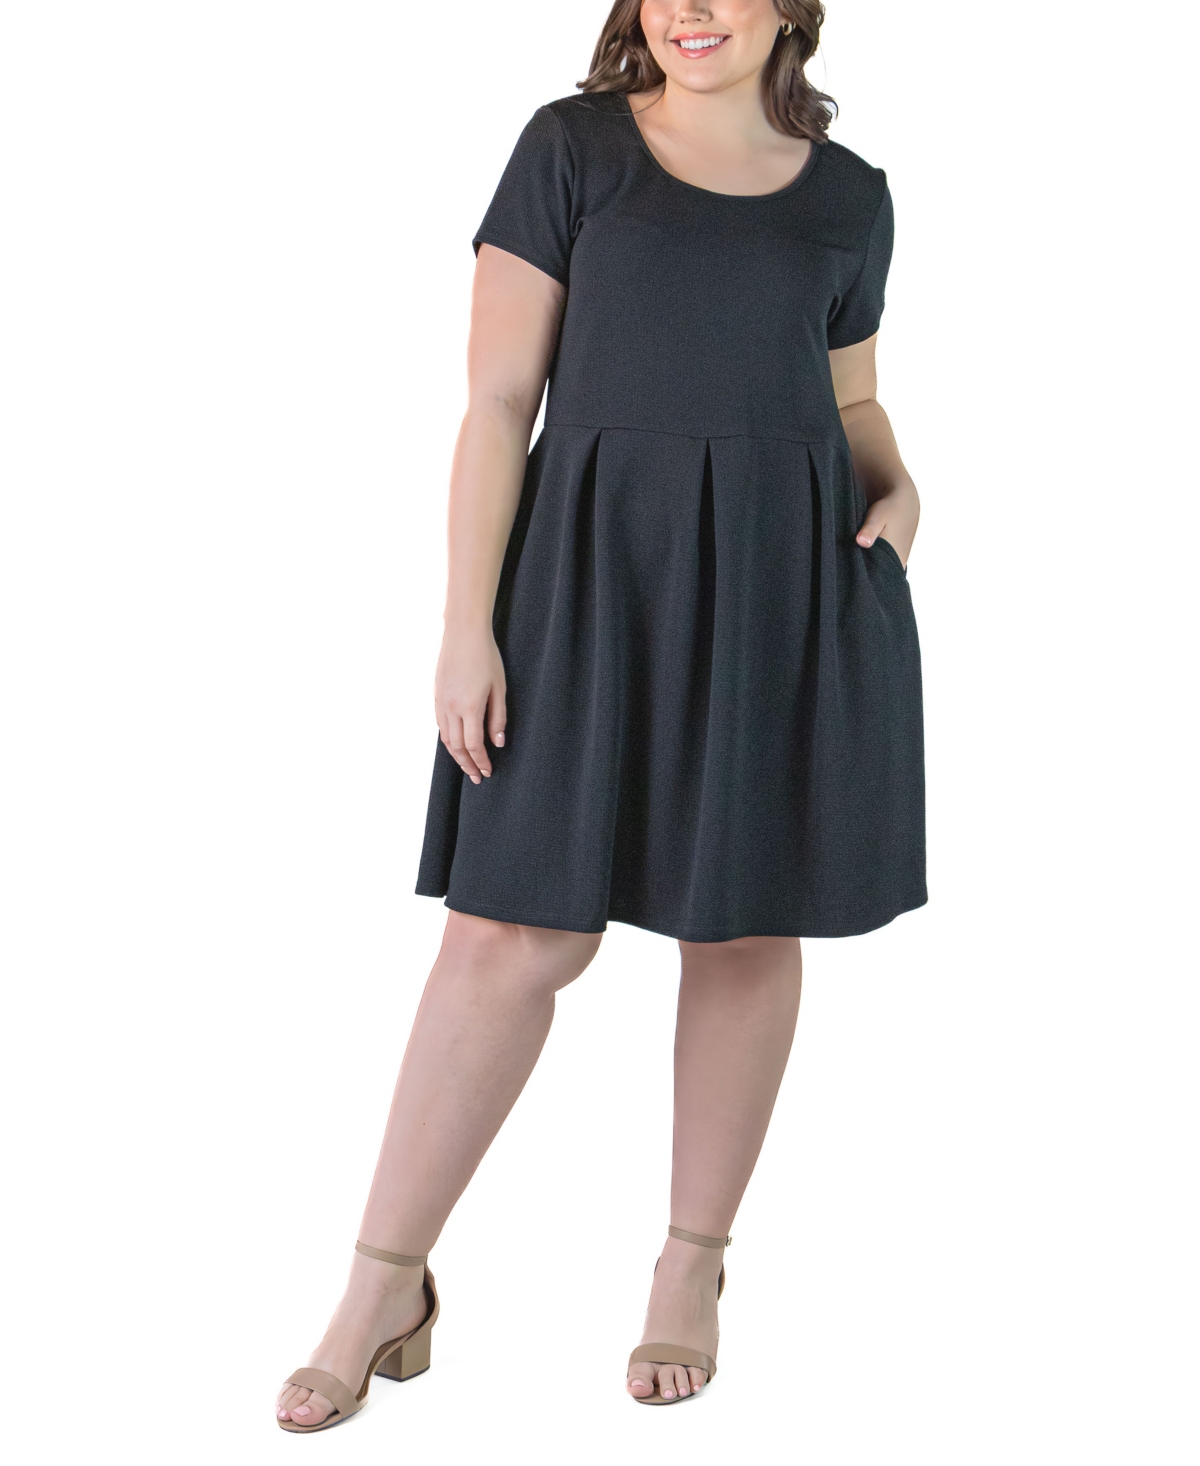 24seven Comfort Apparel Plus Size Scoop Neck Knee Length Pocket Dress In Black